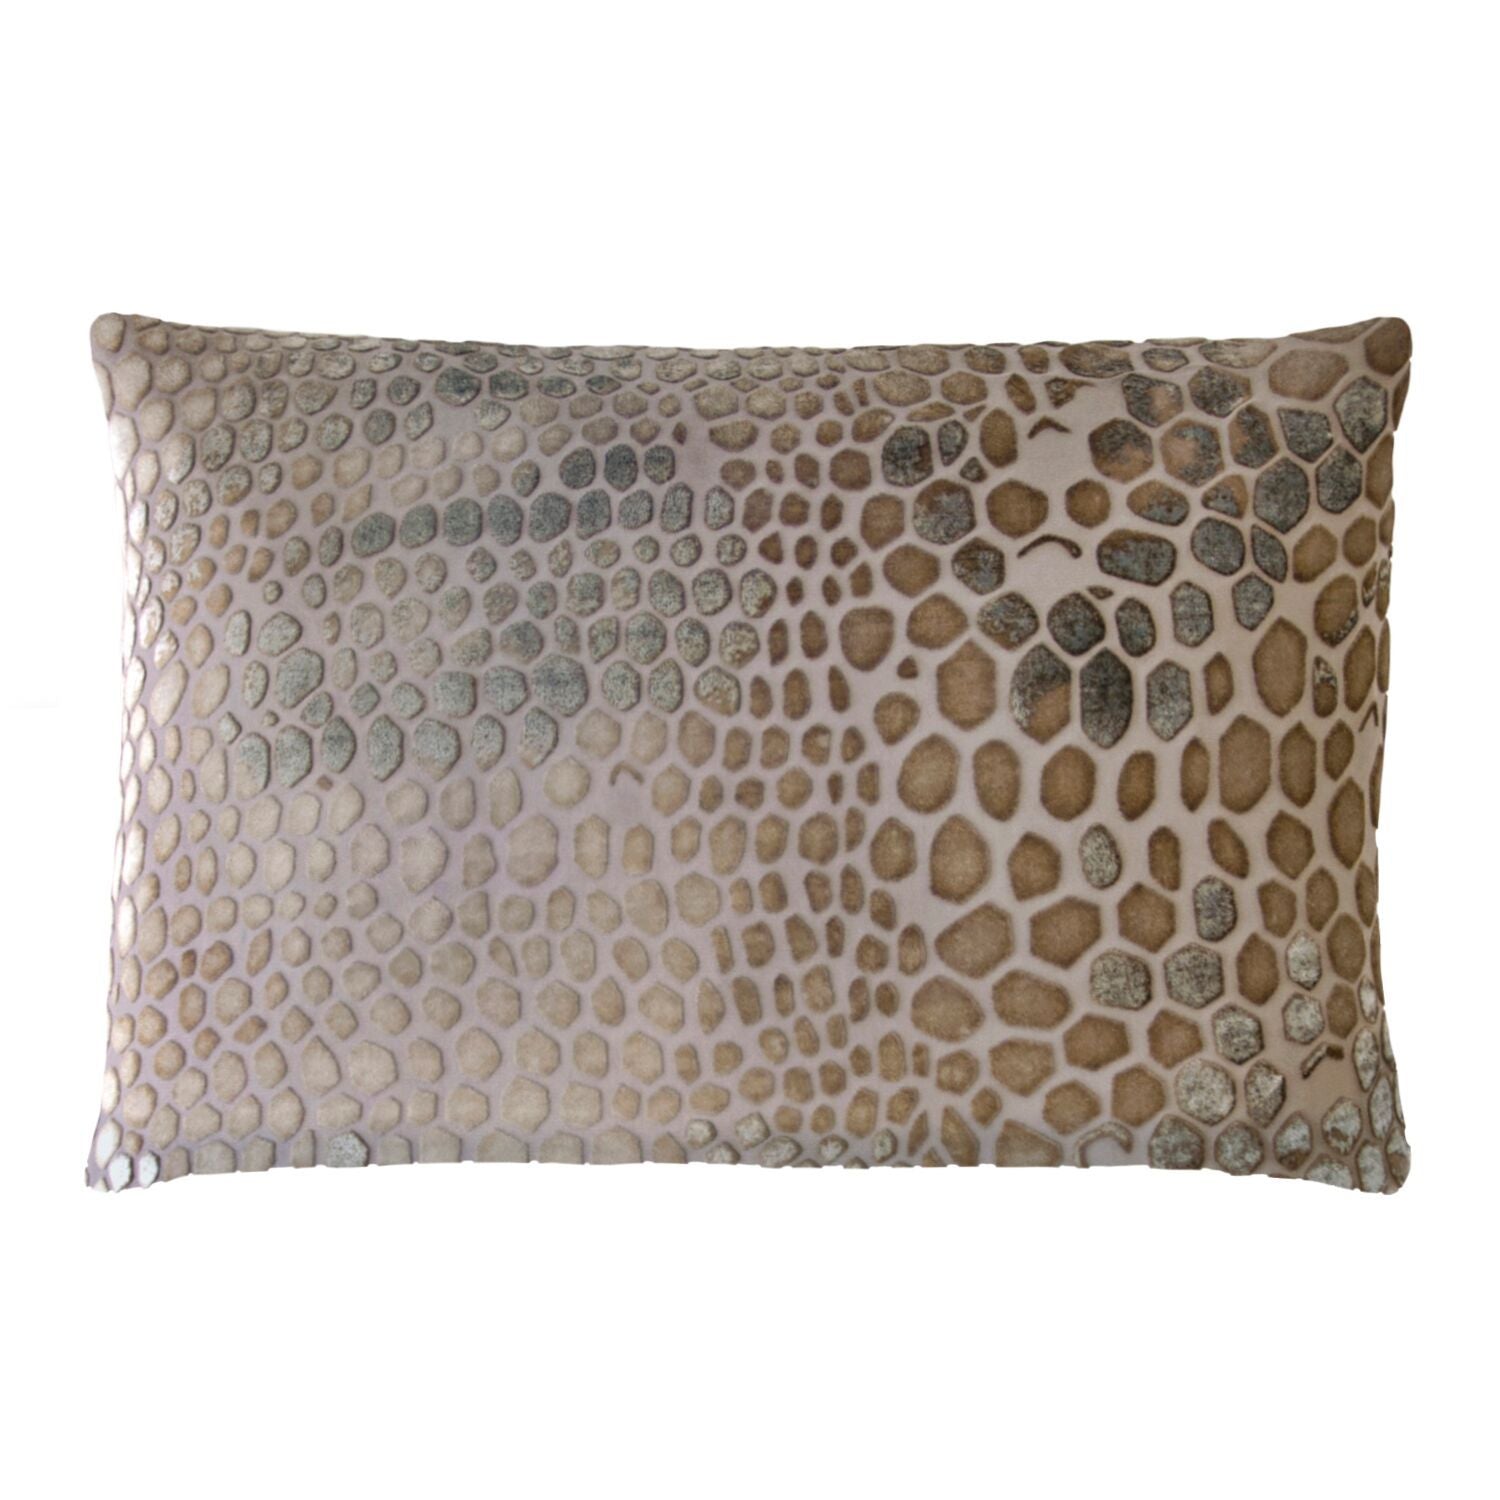 Kevin O'Brien Studio Snakeskin Velvet Pillows in Coyote | Fig Linens